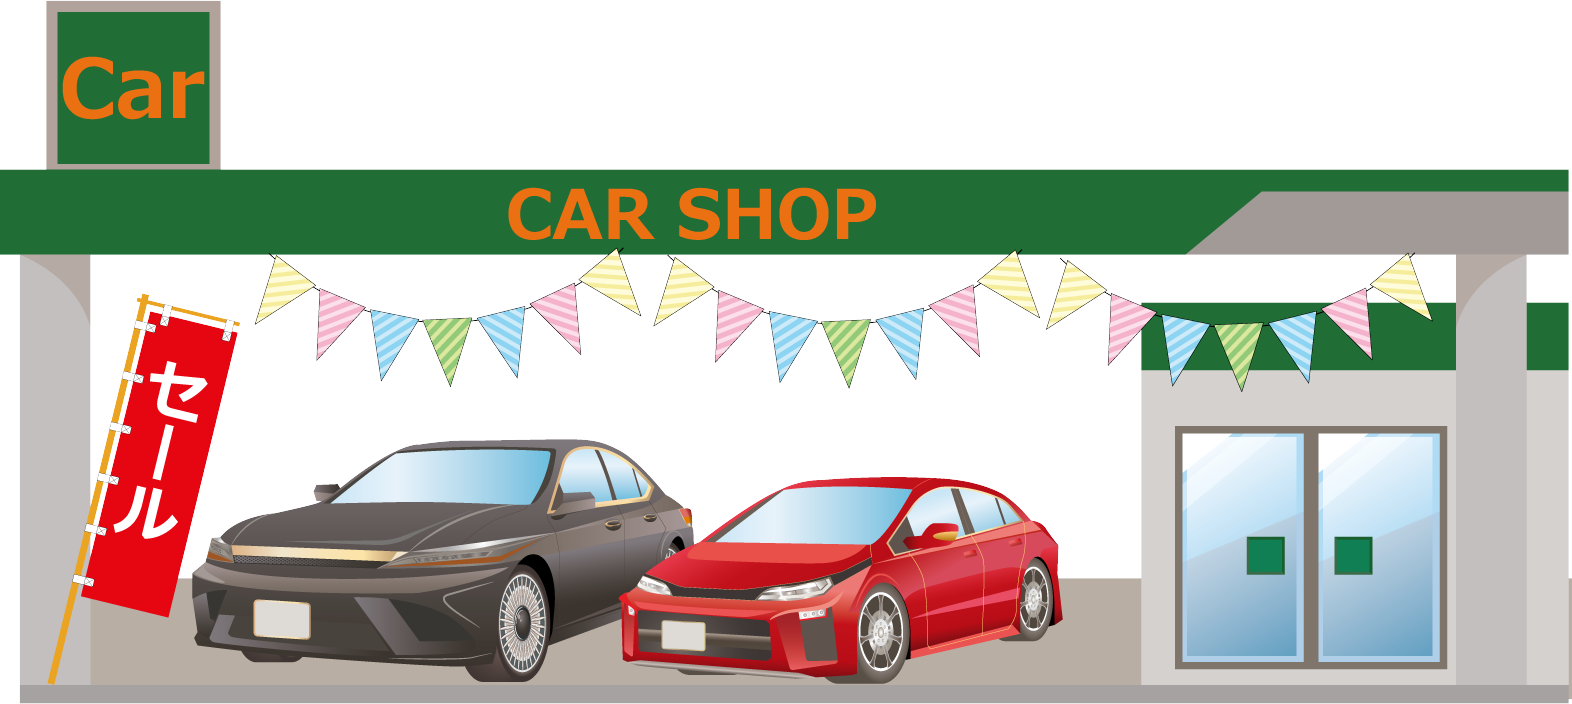 砂川市の車買取店やカーショップなどの一覧